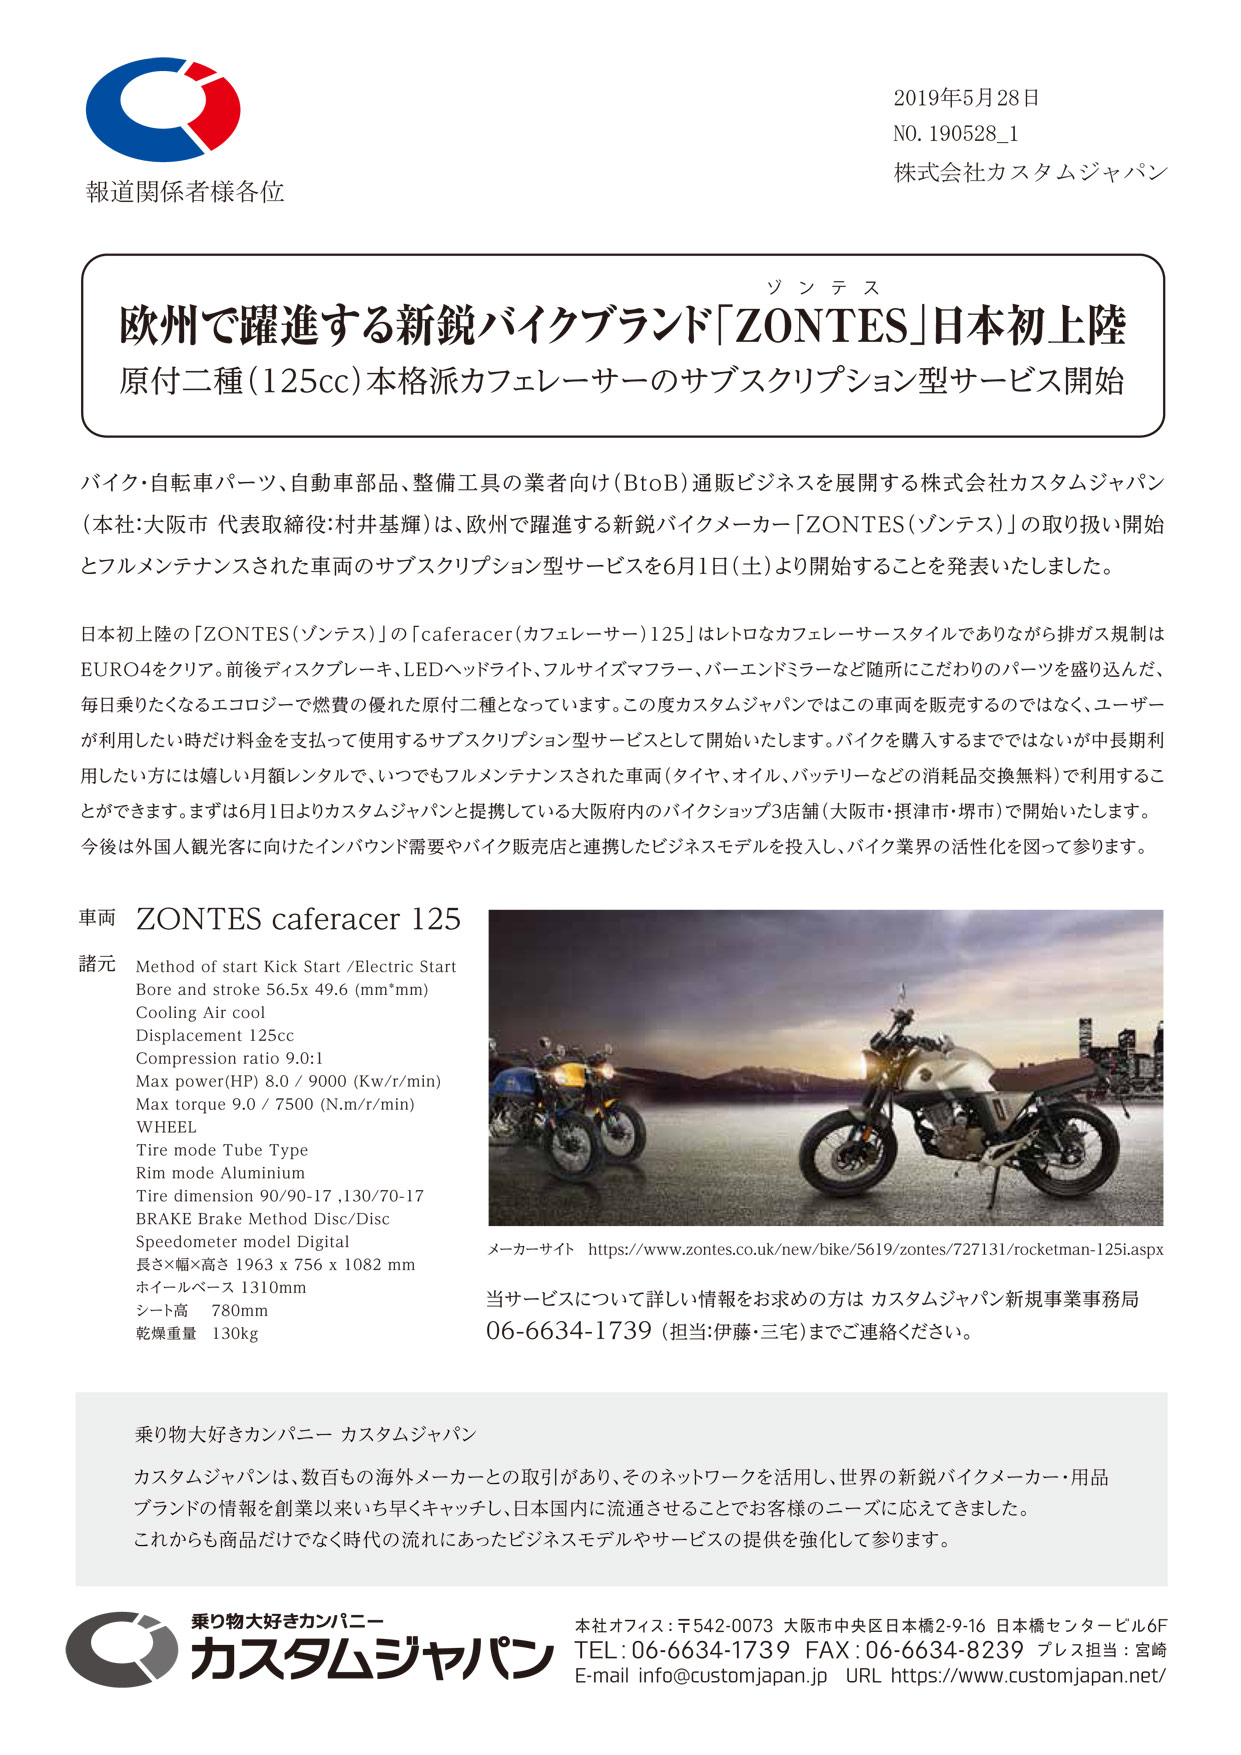 欧州で躍進する新鋭バイクブランド「ZONTES」日本初上陸